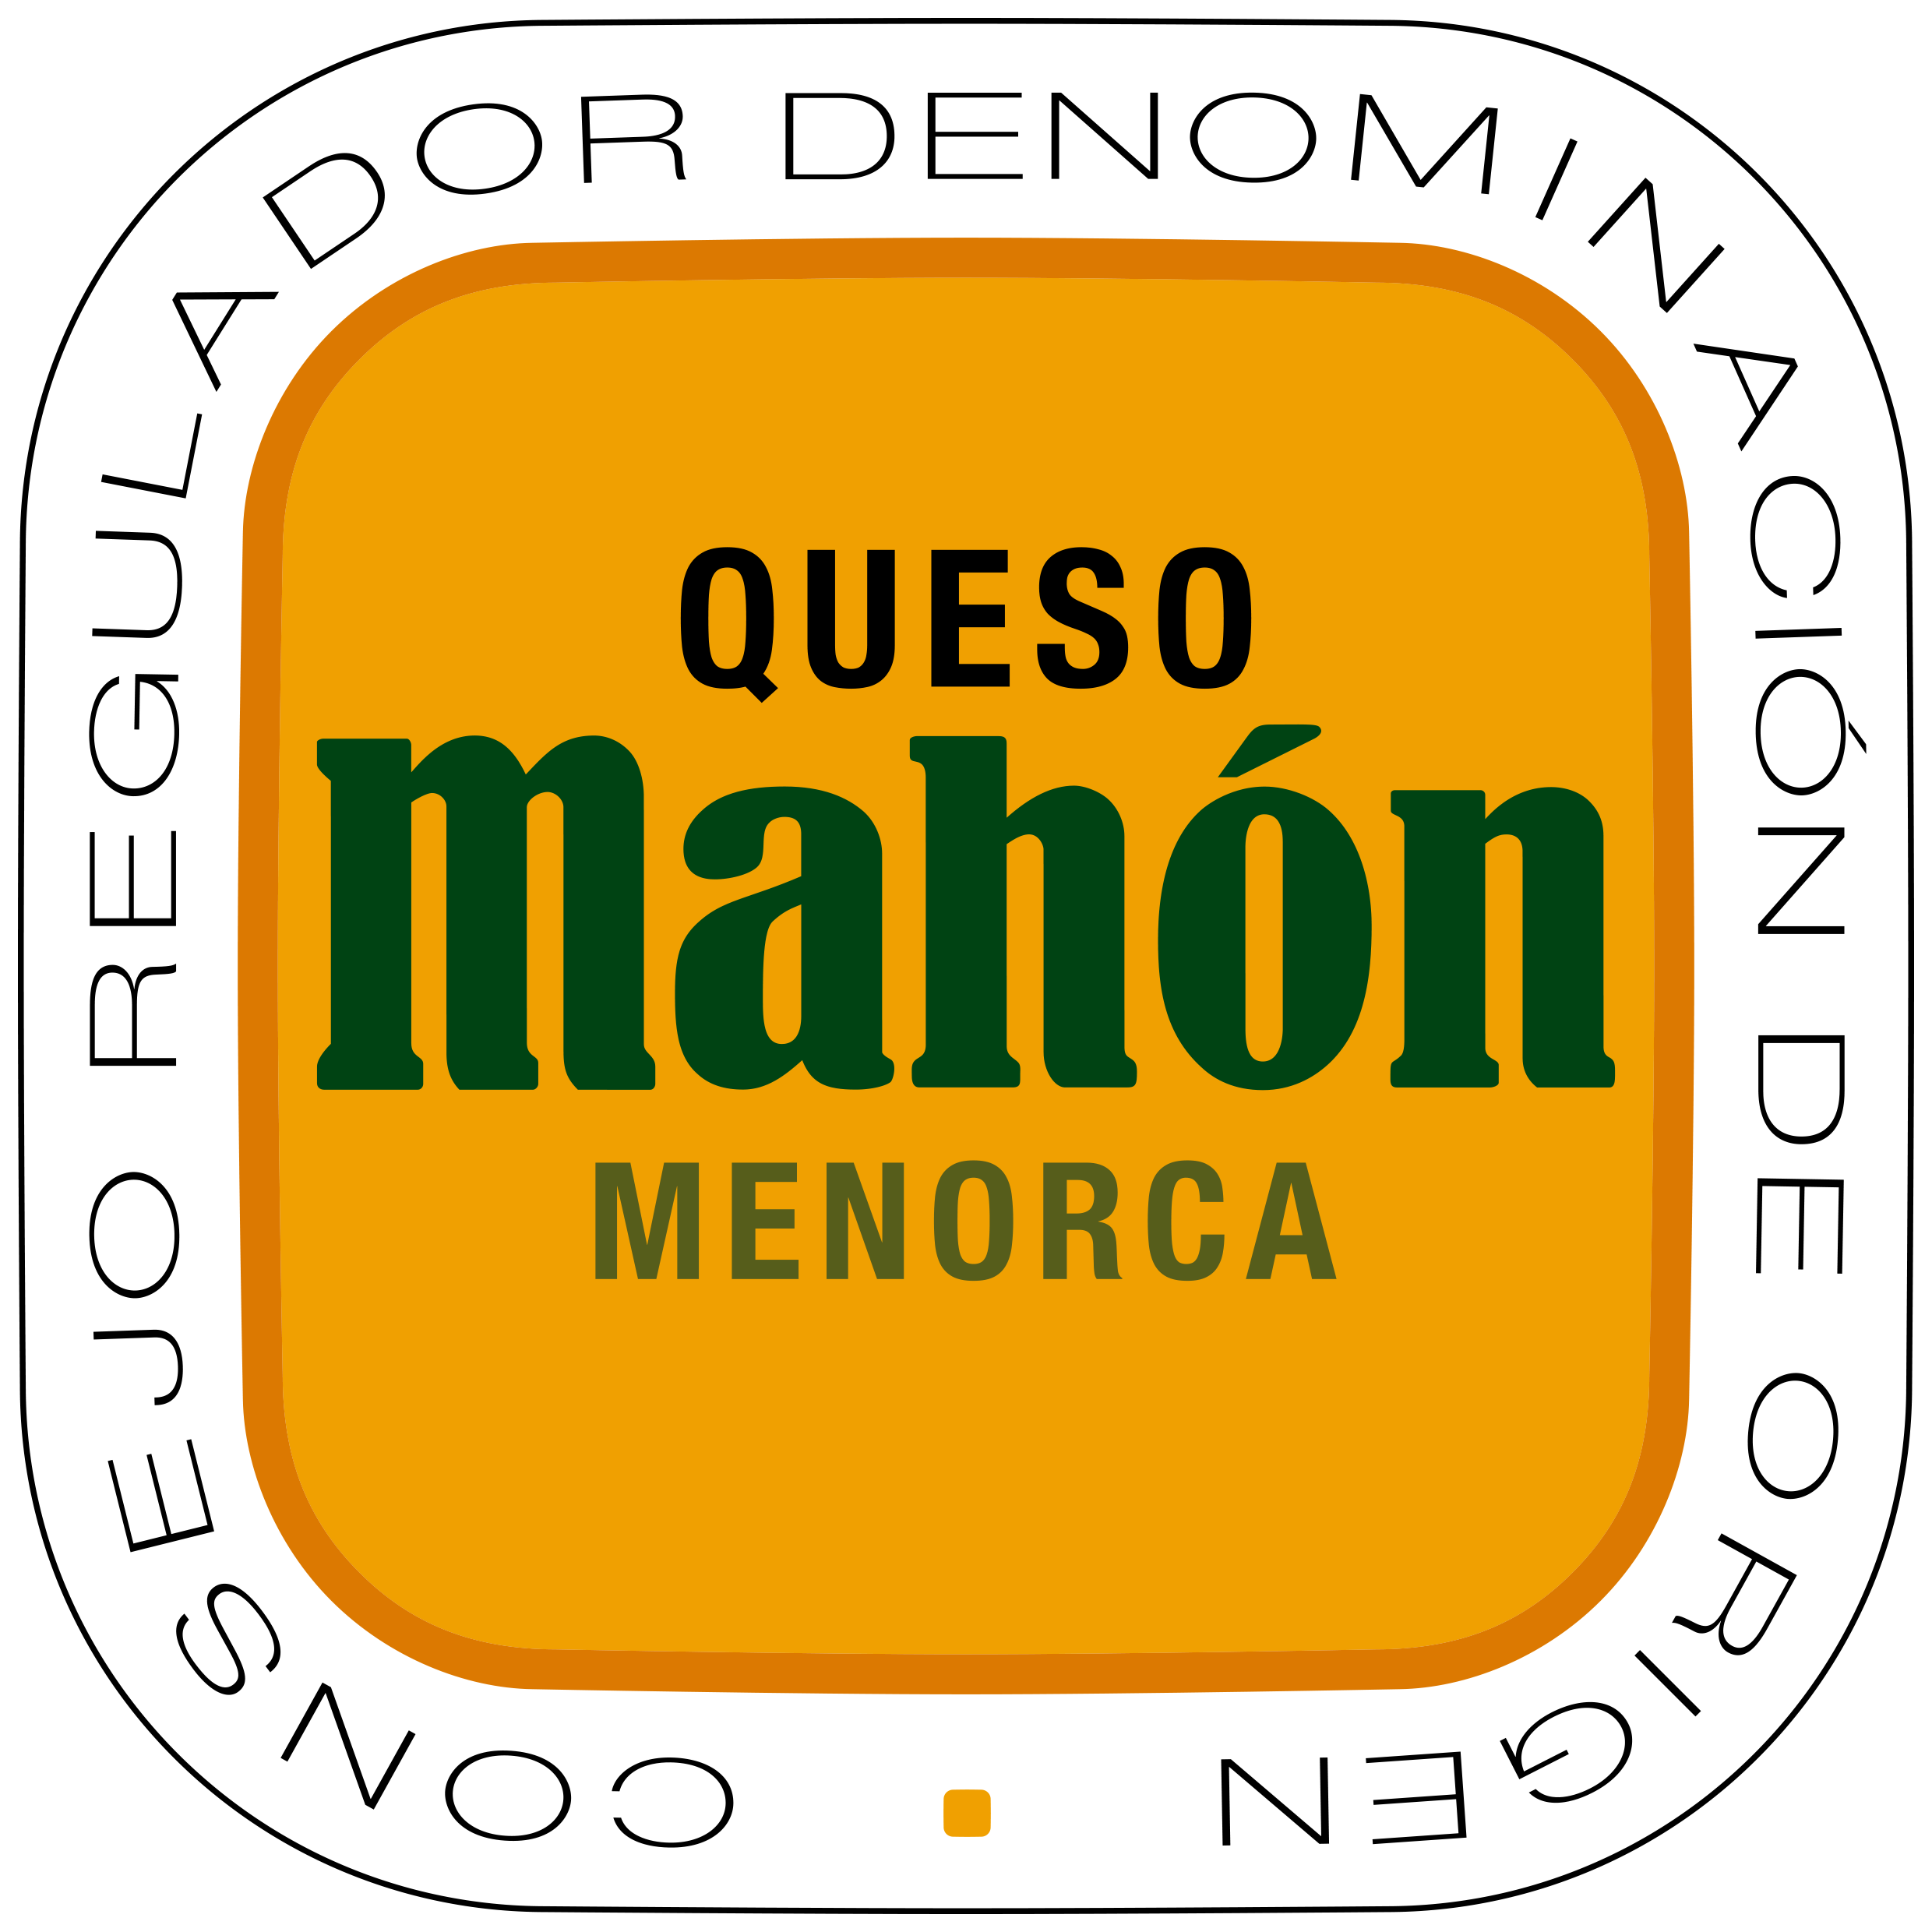 L’any 2019 es comercialitzaren 2500 tm de formatge Mahón-Menorca - Notícies - Illes Balears - Productes agroalimentaris, denominacions d'origen i gastronomia balear